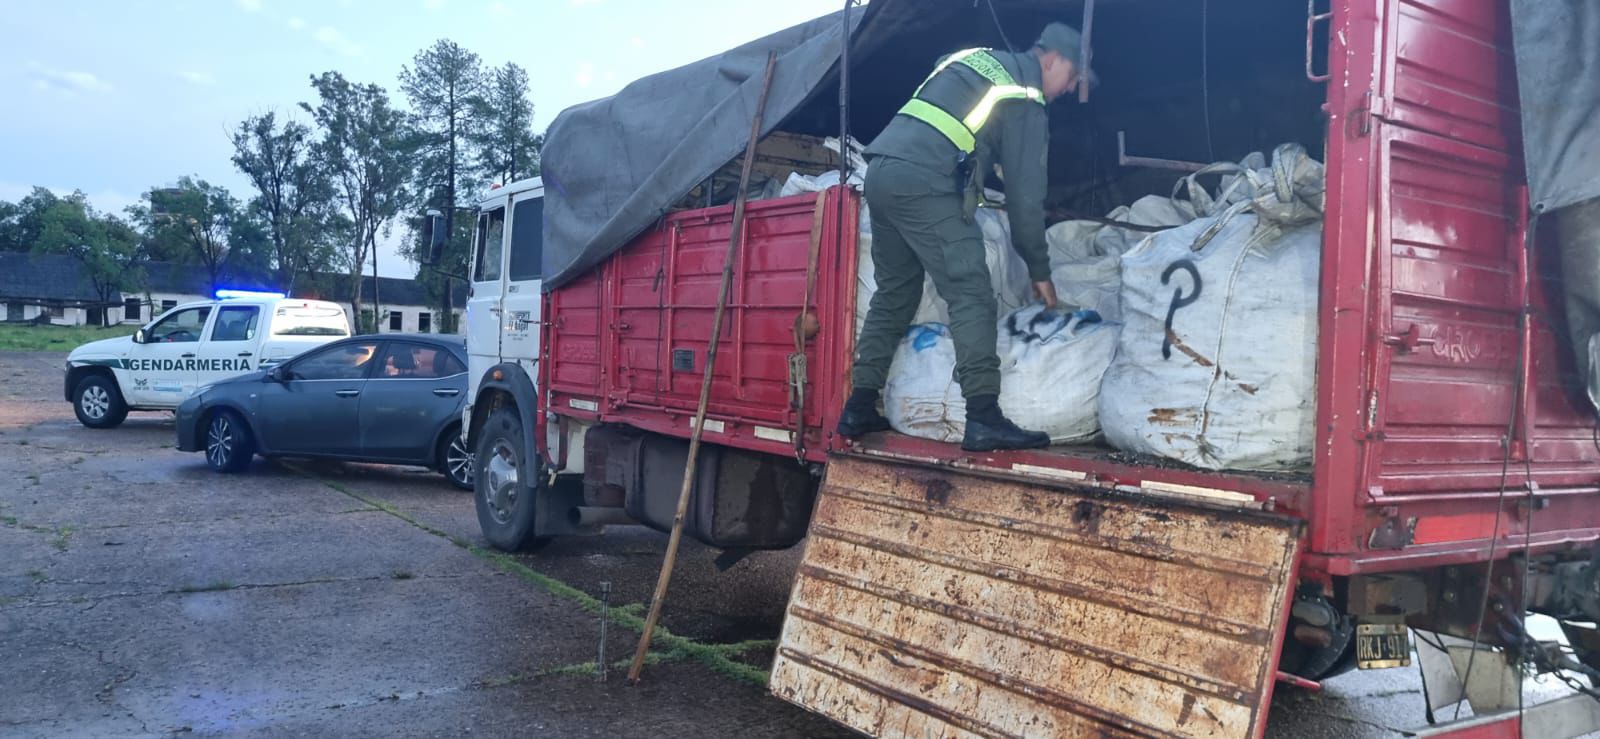 CORRIENTES: Gendarmería incauto mas de 28.000 kilos de alambre de cobre ilegal